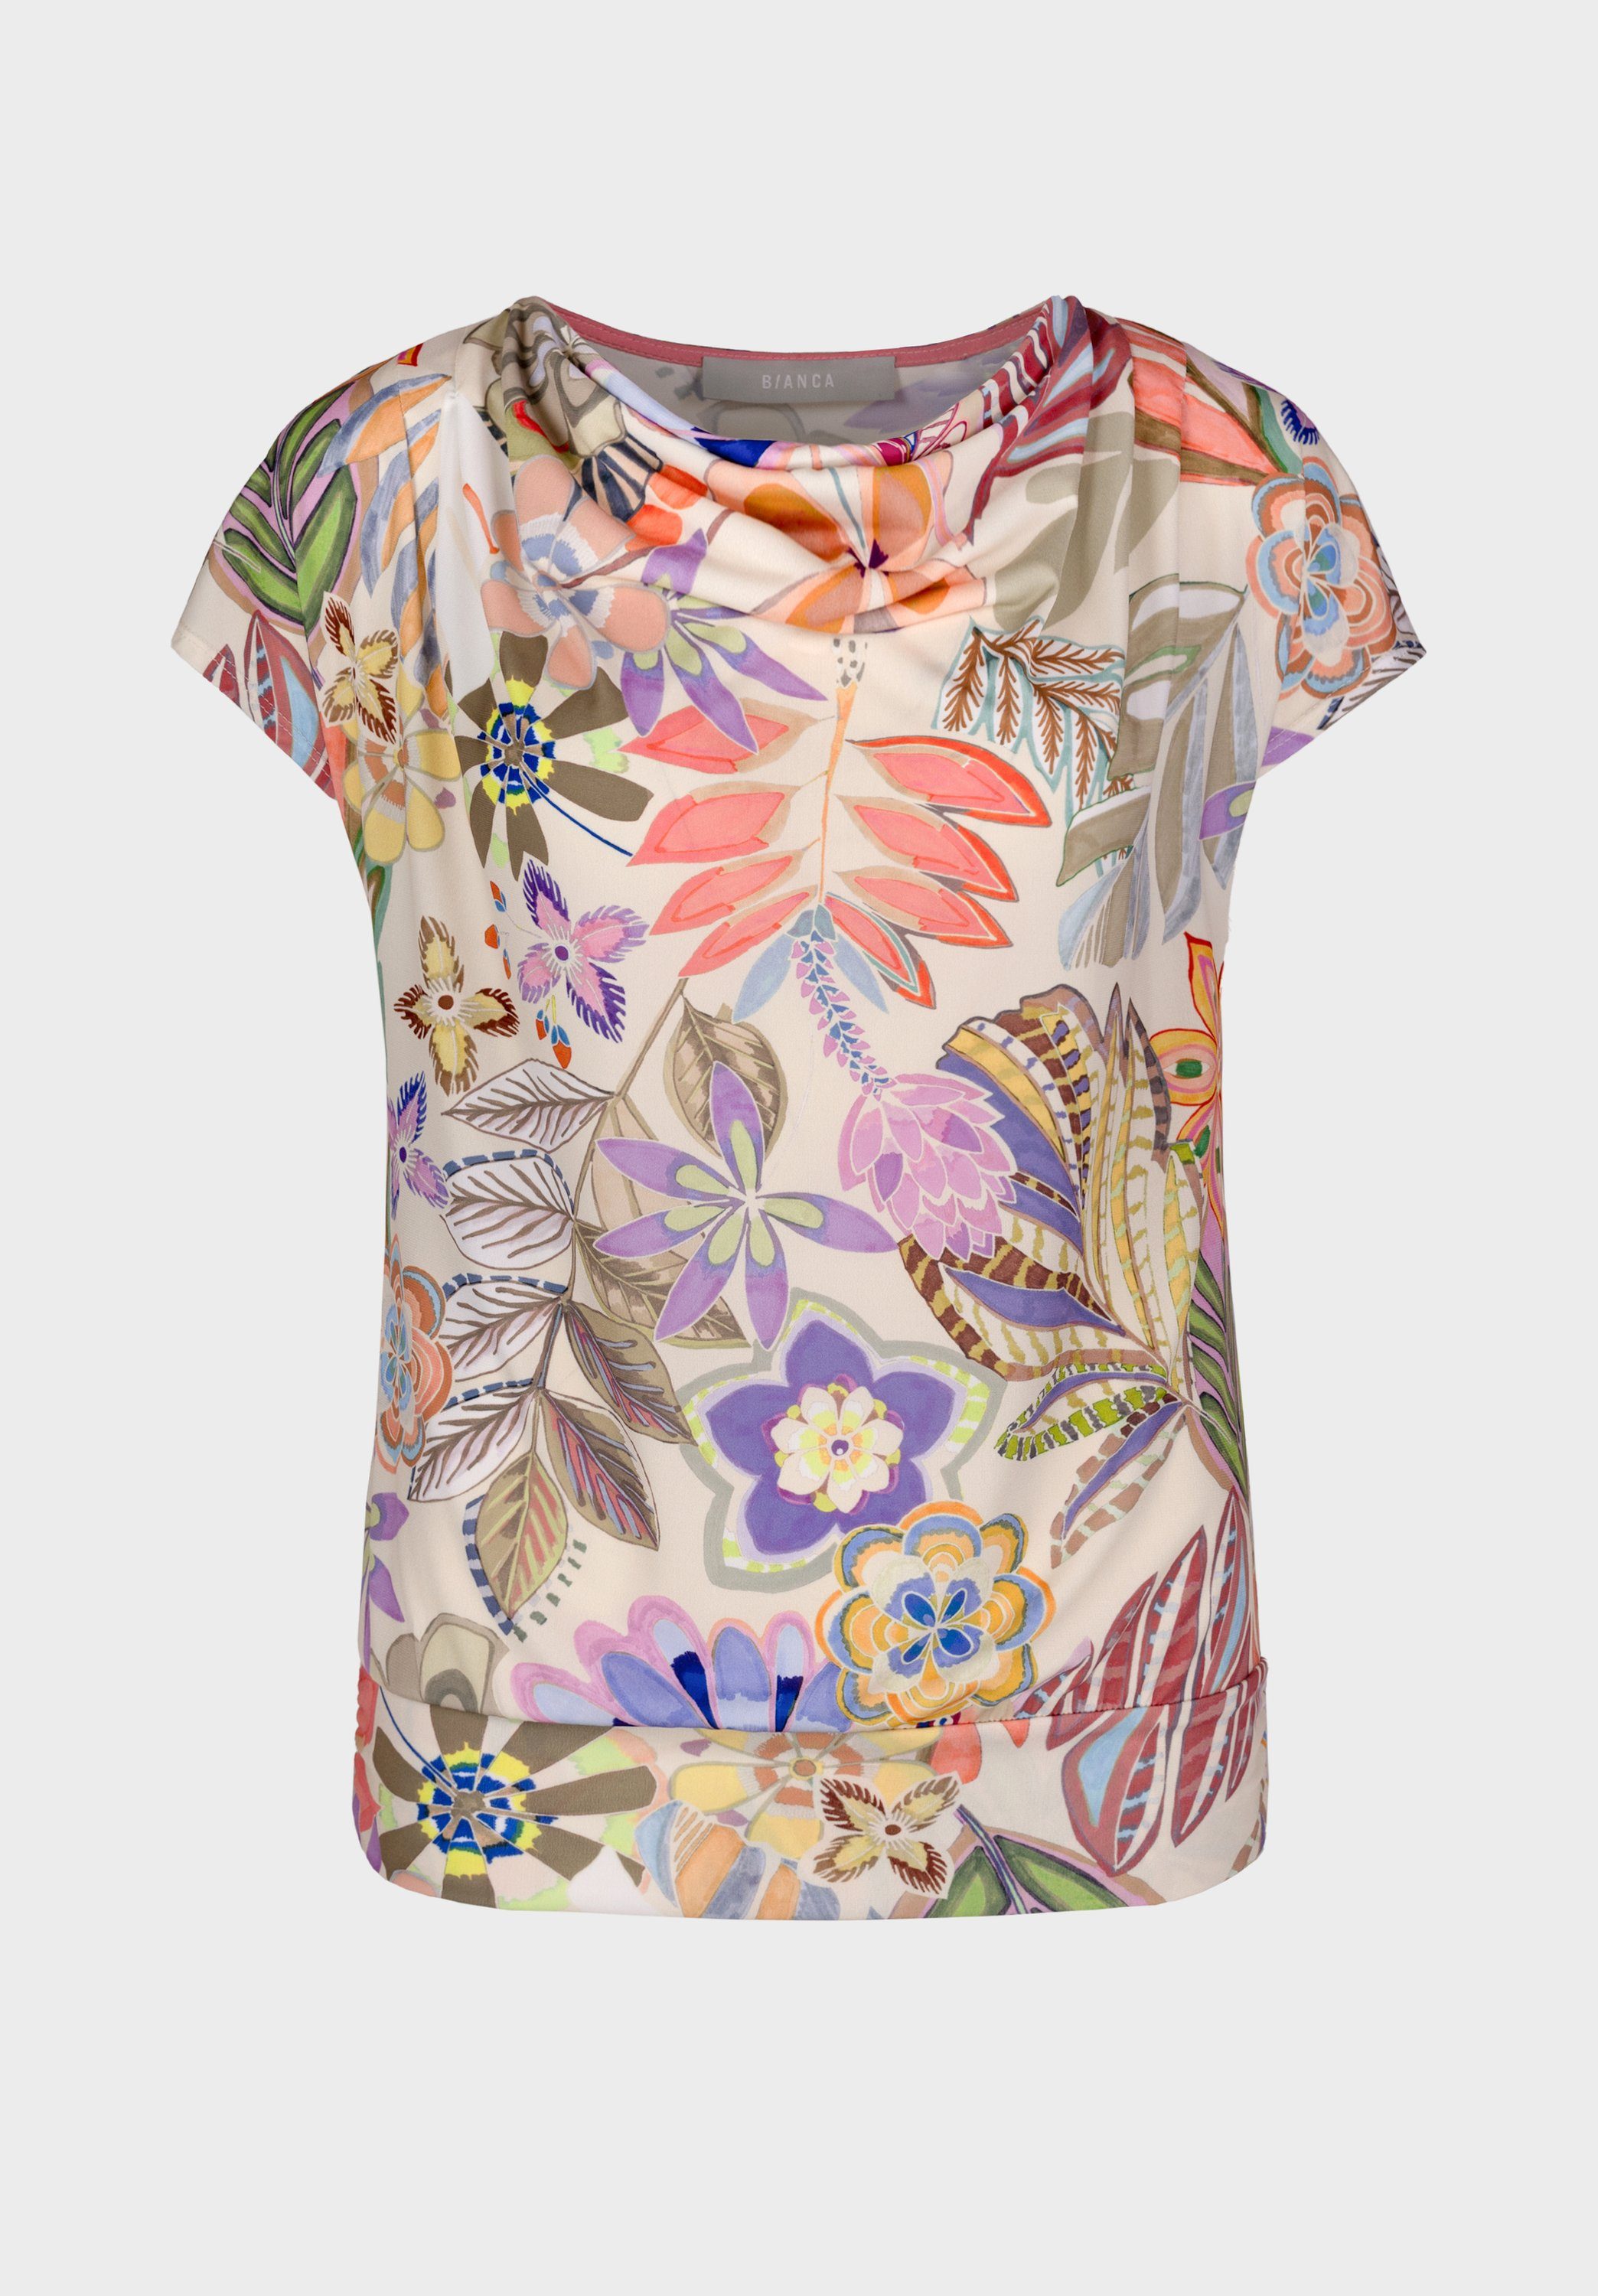 bianca Wasserfallshirt WIEBKE mit modischem, floralen Muster in trendigen Farben